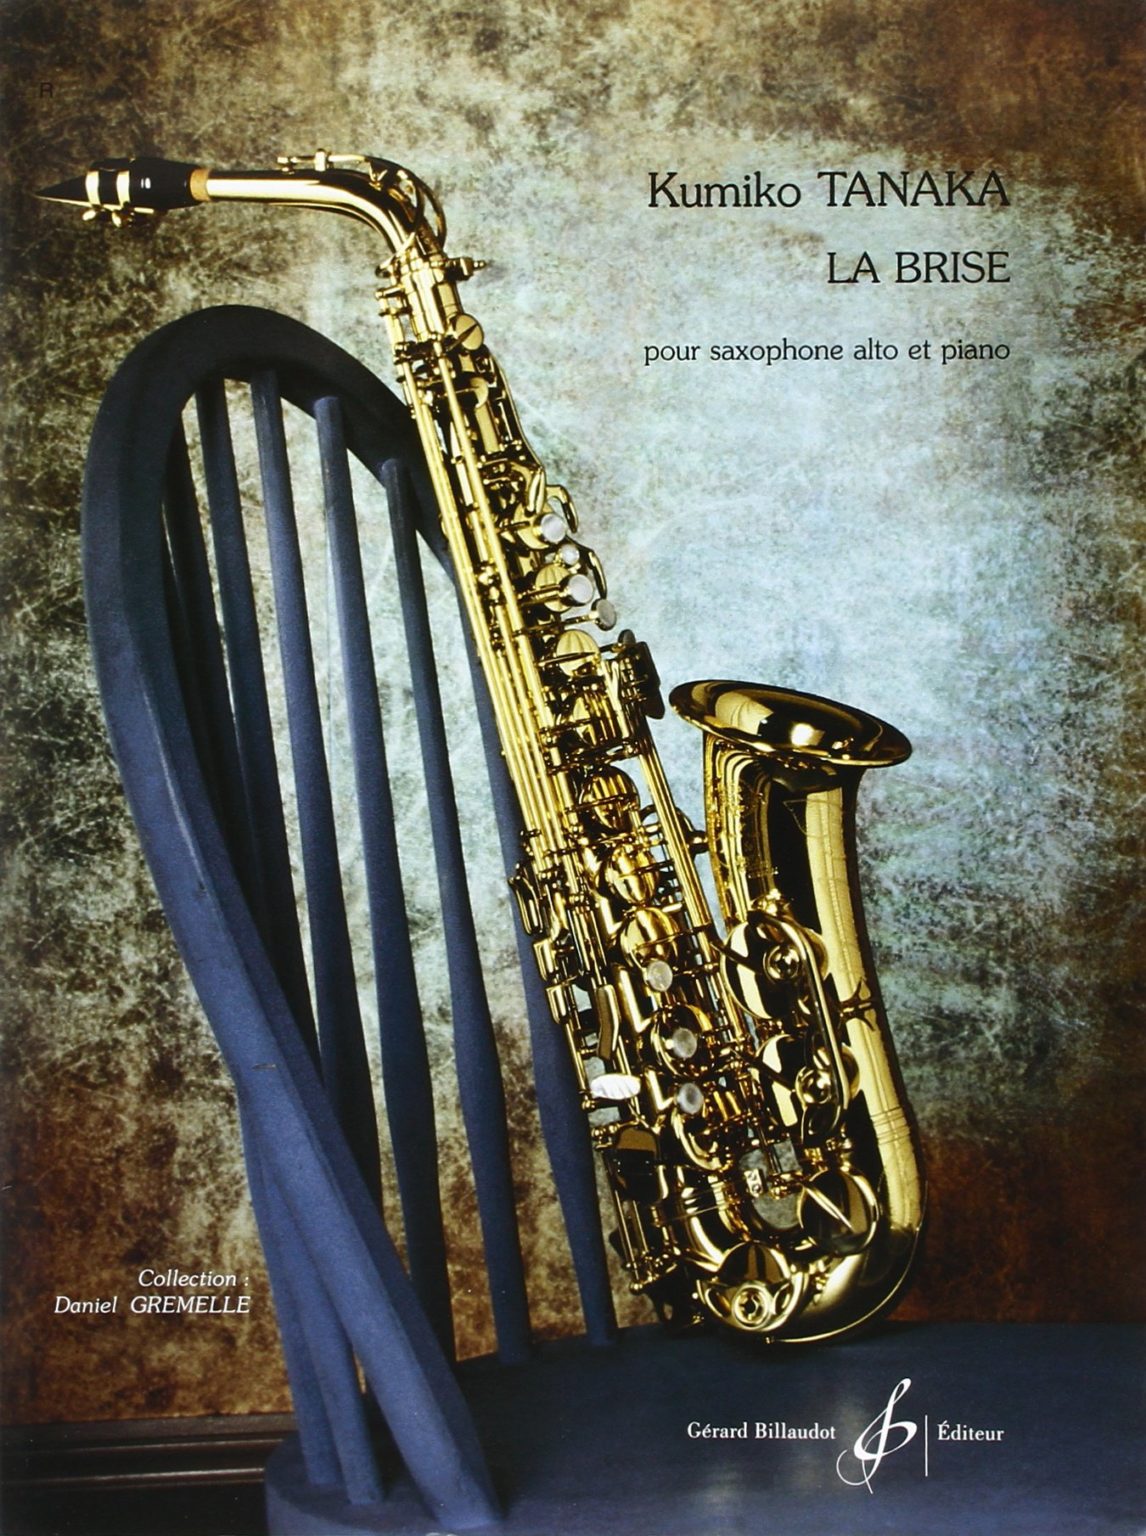 La Brise (2001). Kumiko Tanaka